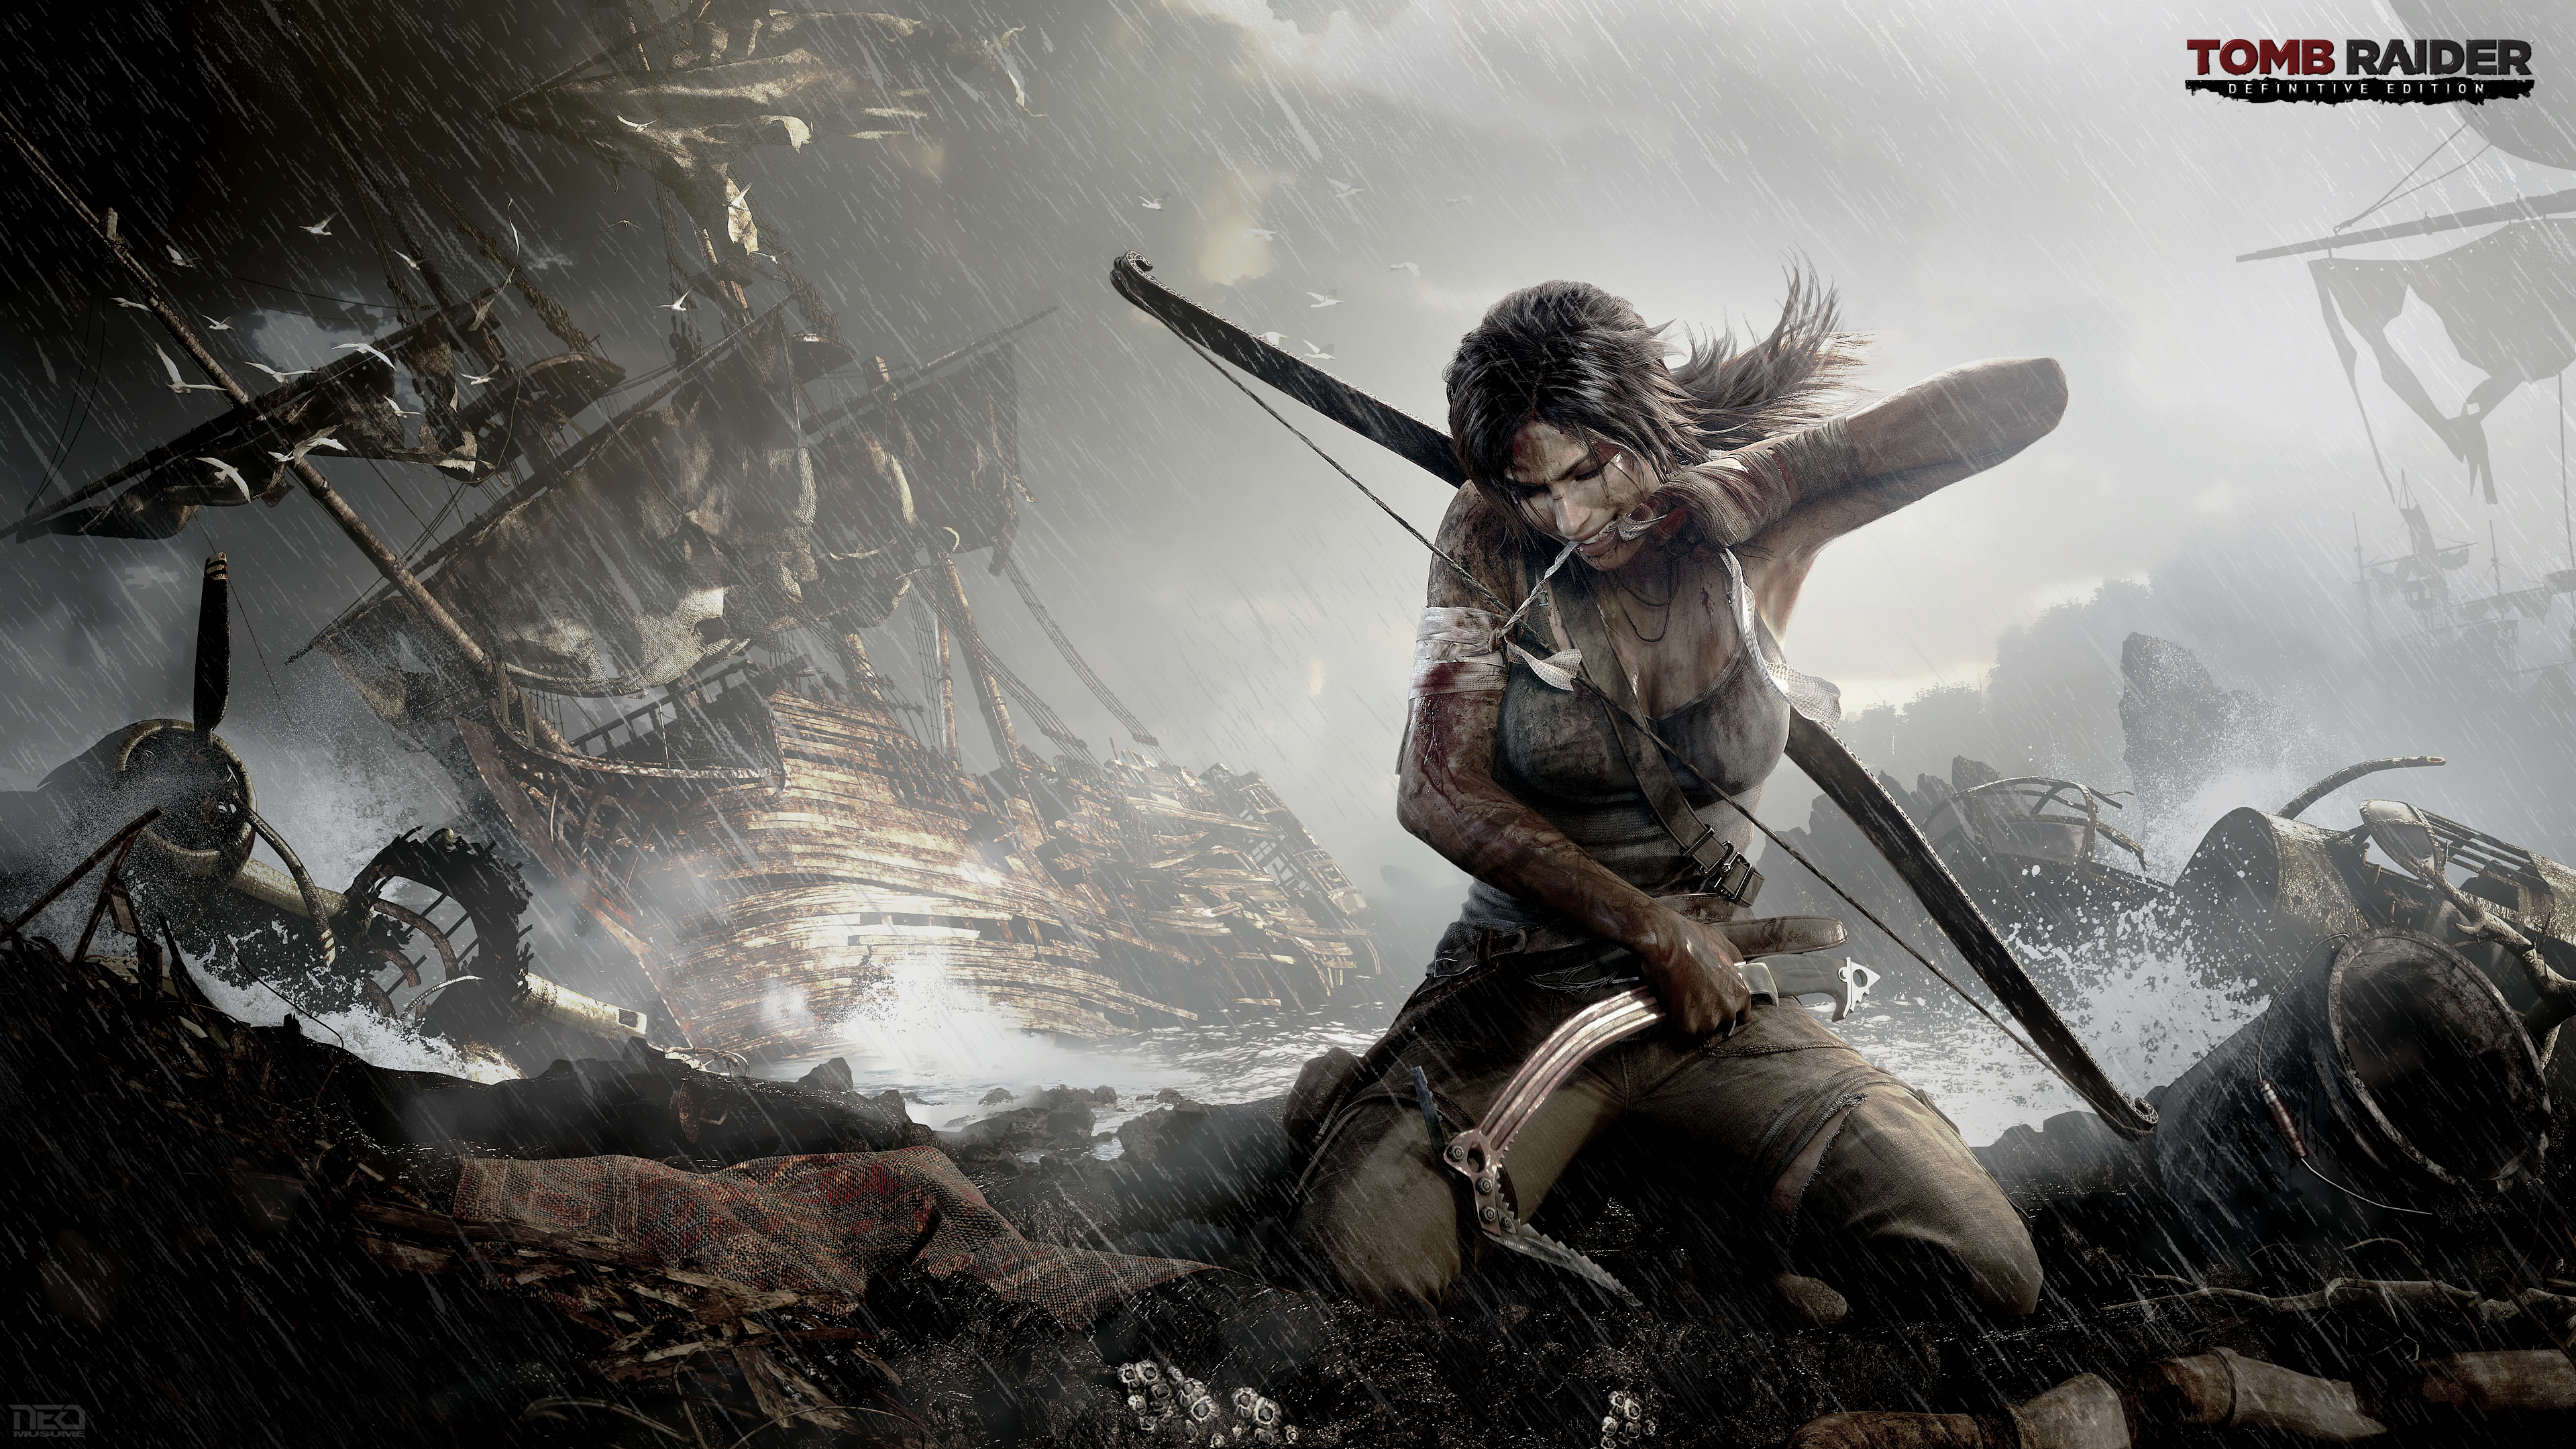 Khám phá thế giới kỳ thú của game Tomb Raider thông qua bức hình nền 4K siêu sắc nét. Với thiết kế tinh tế, động đầy mê hoặc, chắc chắn sẽ mang đến cho bạn cảm giác cuốn hút và phấn khích khi trải nghiệm trò chơi. Hãy cùng tải ngay và trang trí cho màn hình của bạn trở nên độc đáo và rực rỡ hơn.